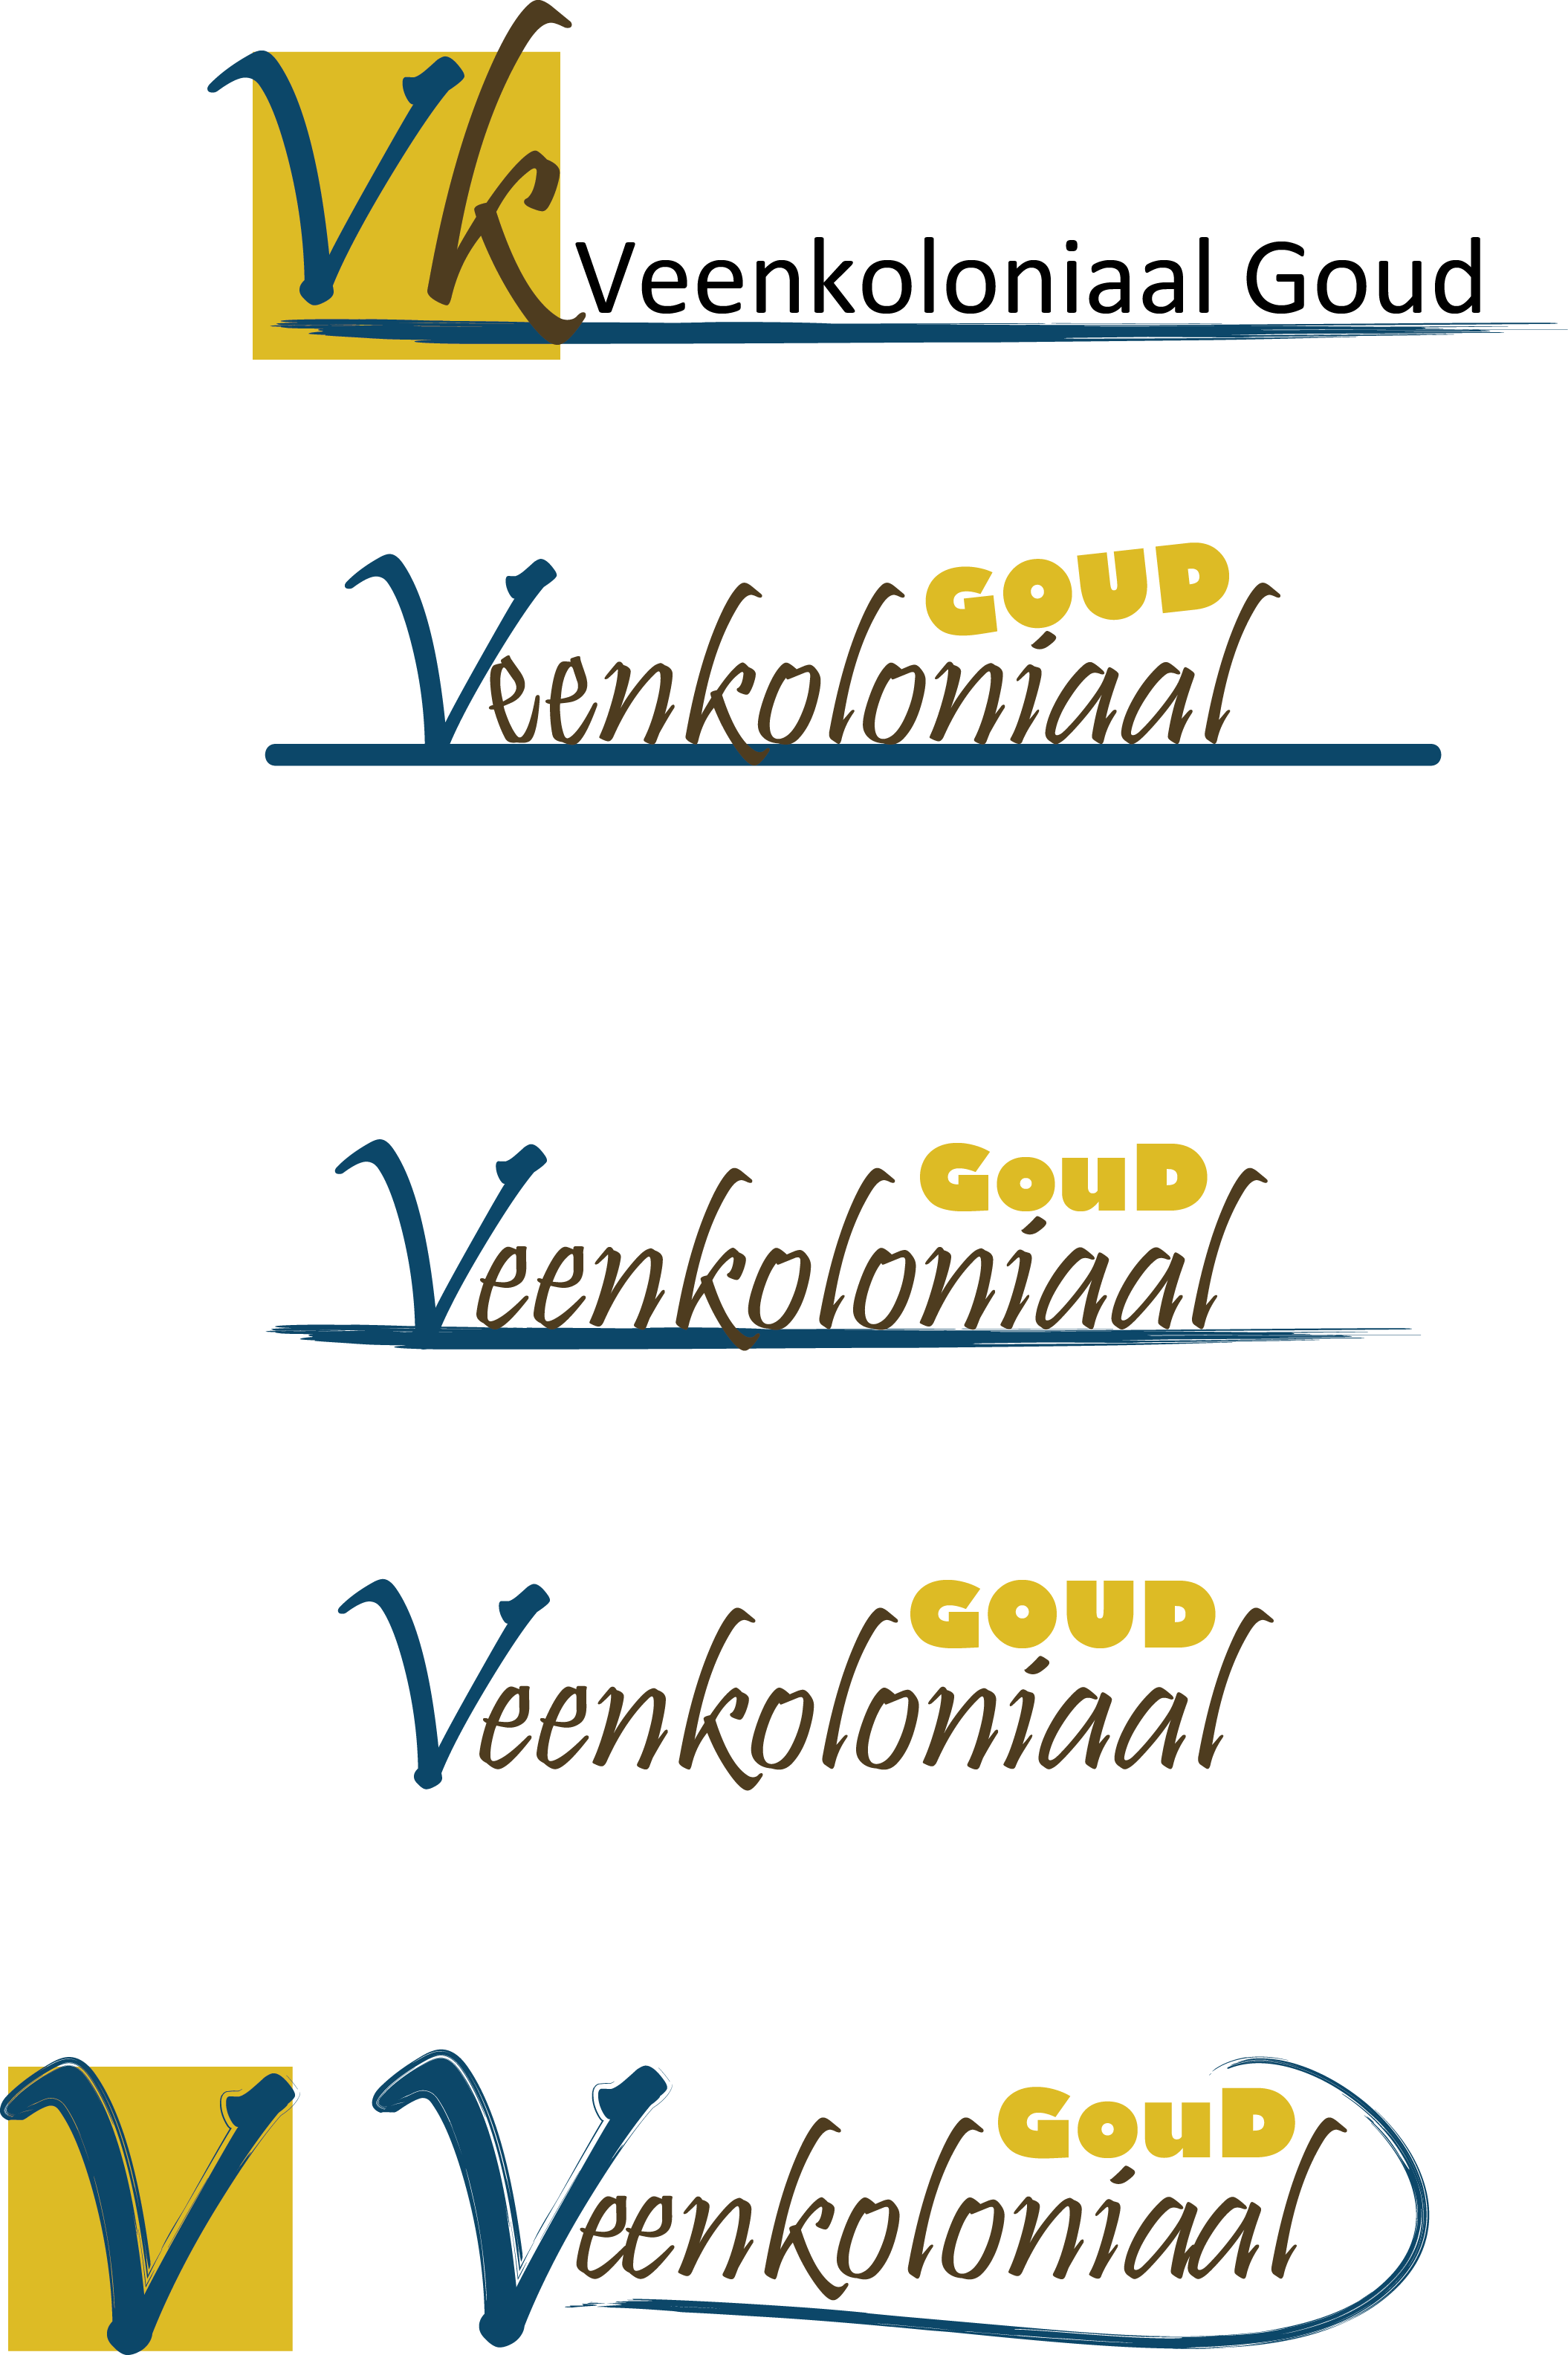 The 5 final logos for Veenkoloniaal Goud.